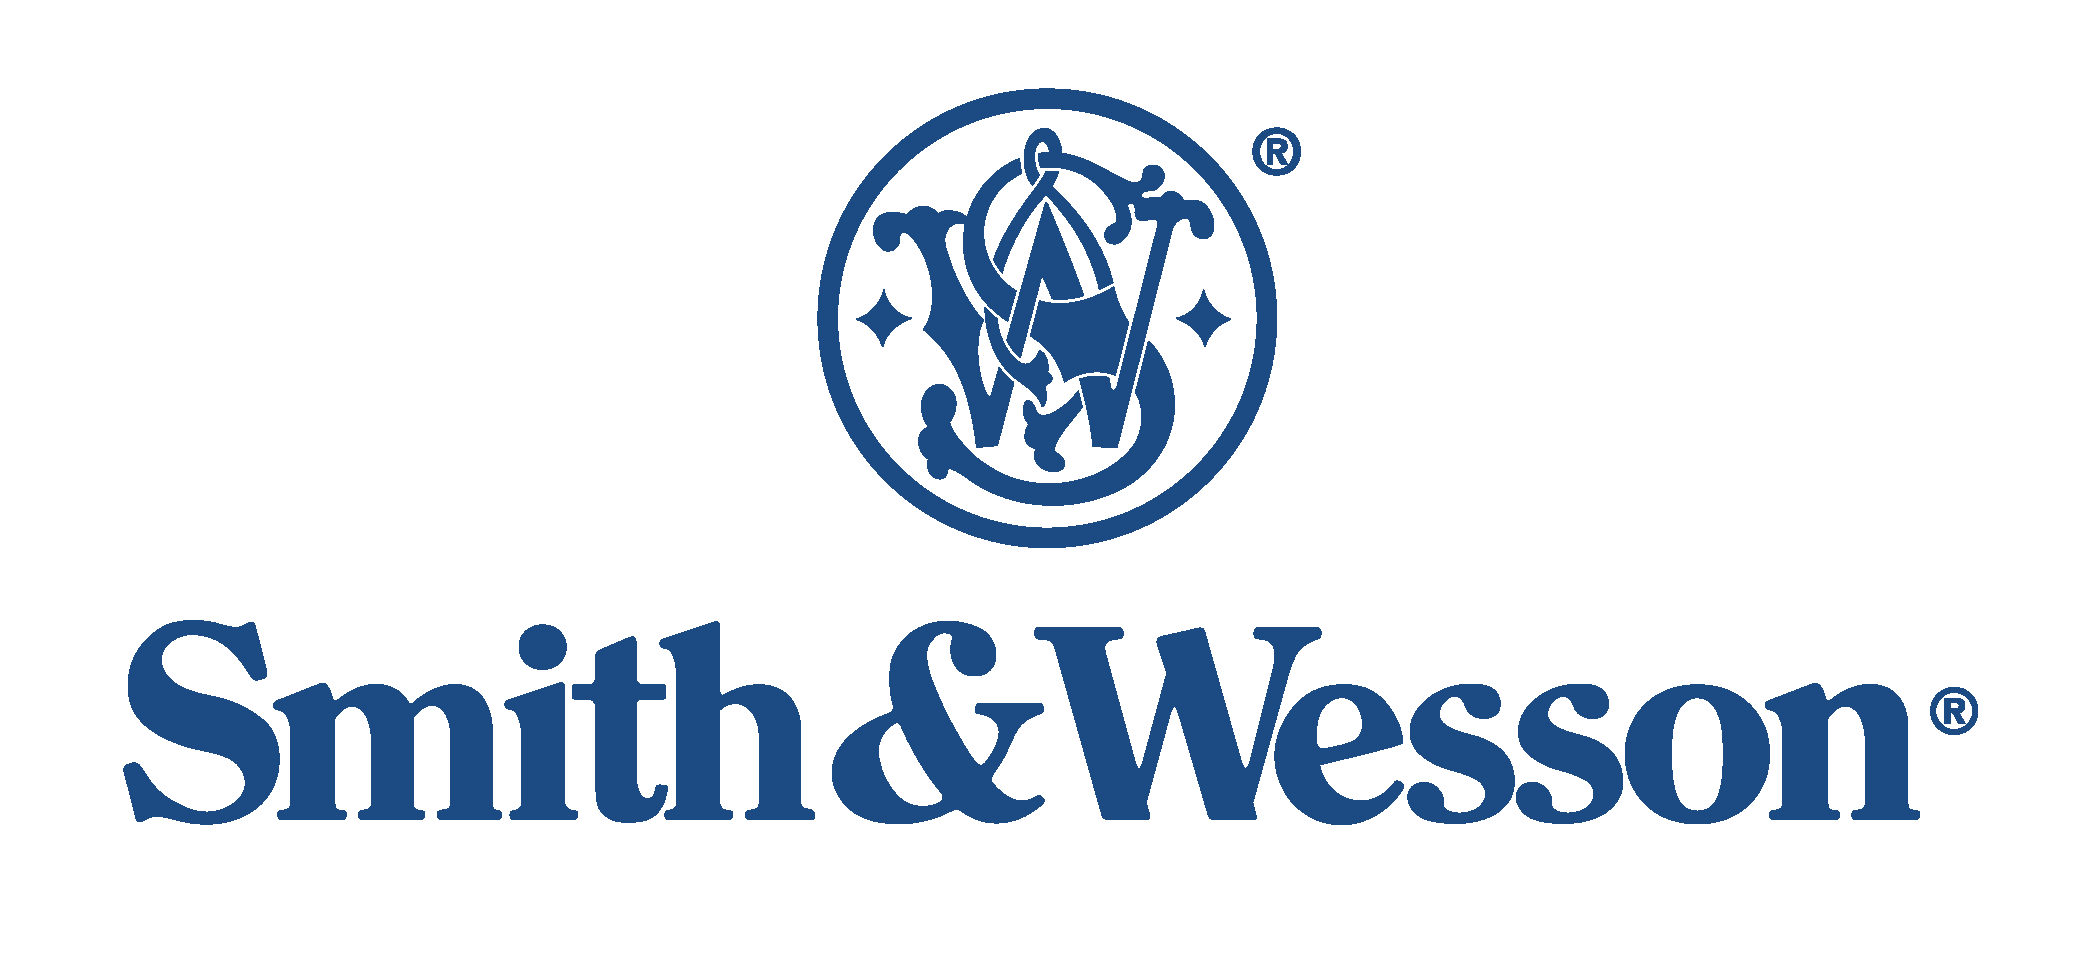 Smith & Wesson Logo Vector